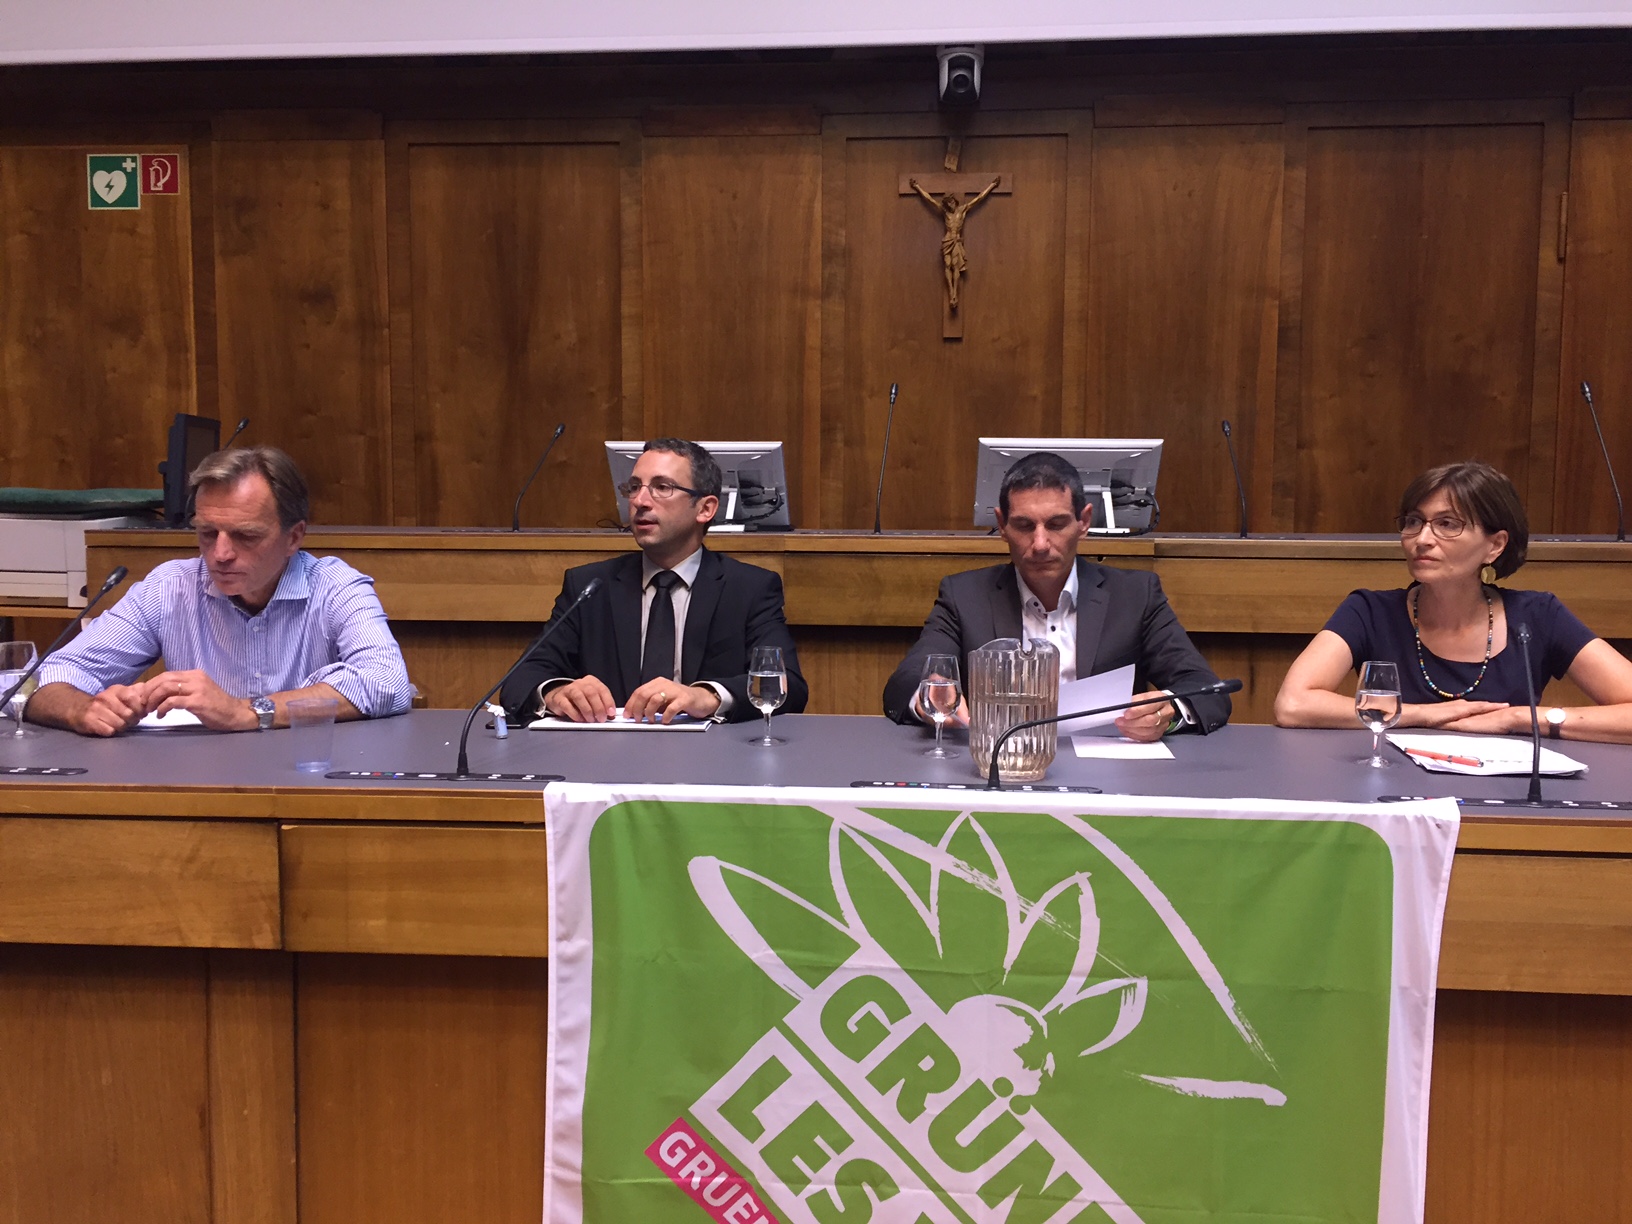 Le premier débat sur Sion 2026 a été organisé par les Verts valaisans.